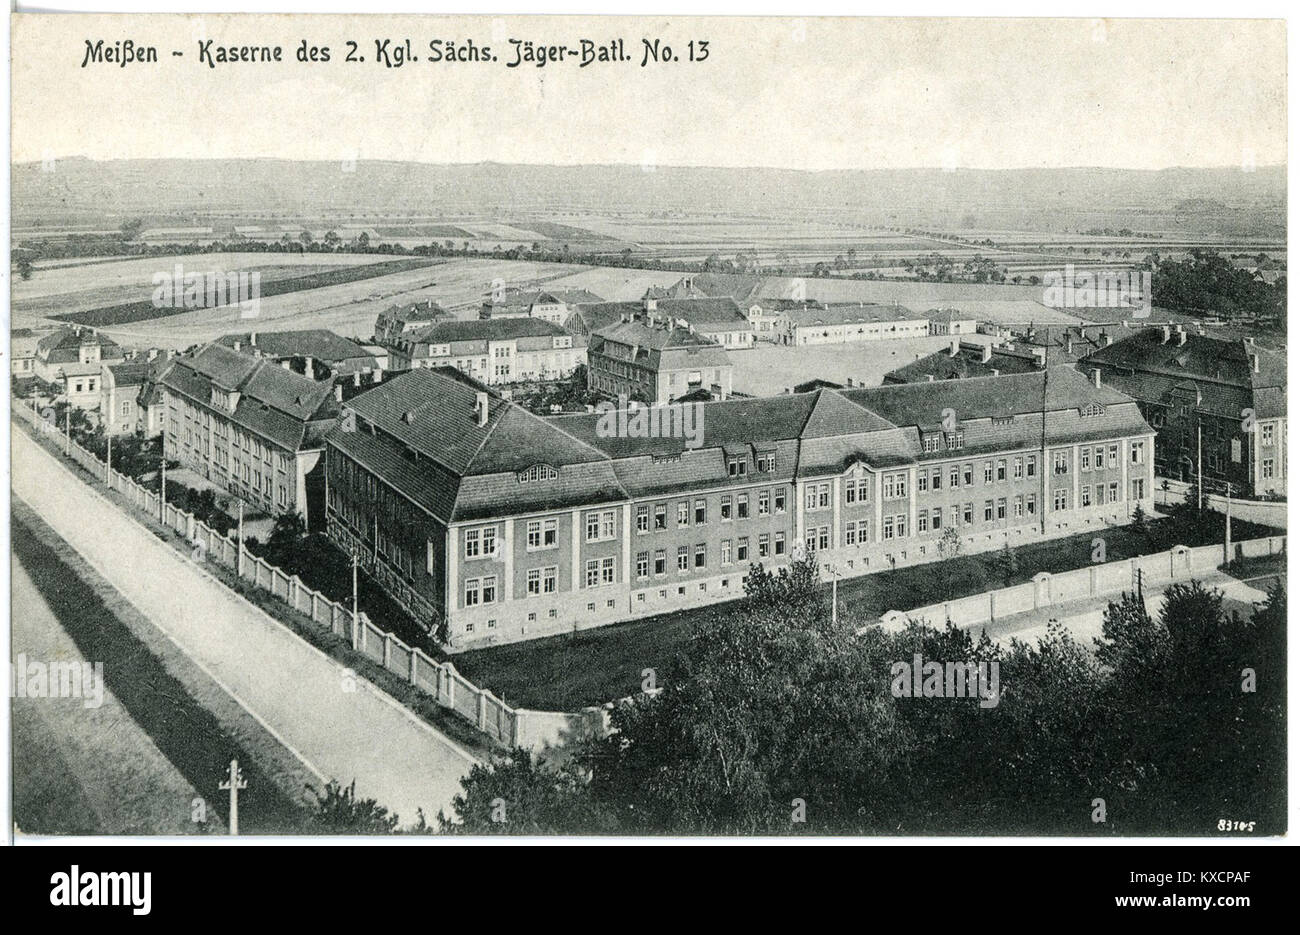 20360-Meißen-1917-Kaserne des 2. Königlich Sächsischen Jäger-Bataillon Nr. 13-Brück & Sohn Kunstverlag Foto de stock